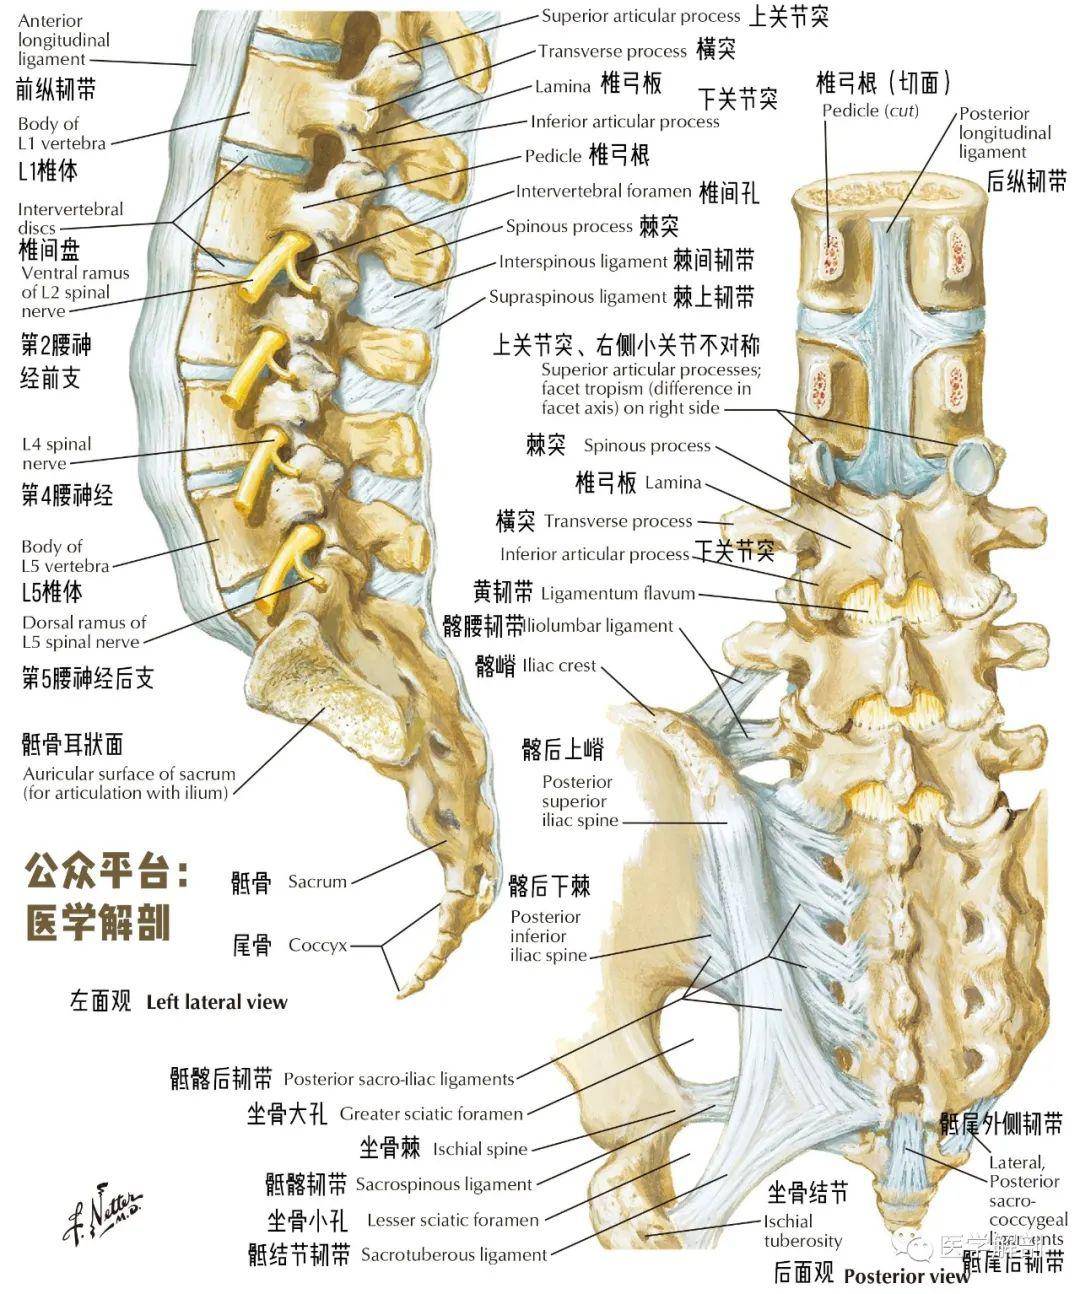 6 骶骨和尾骨-人体解剖学-医学